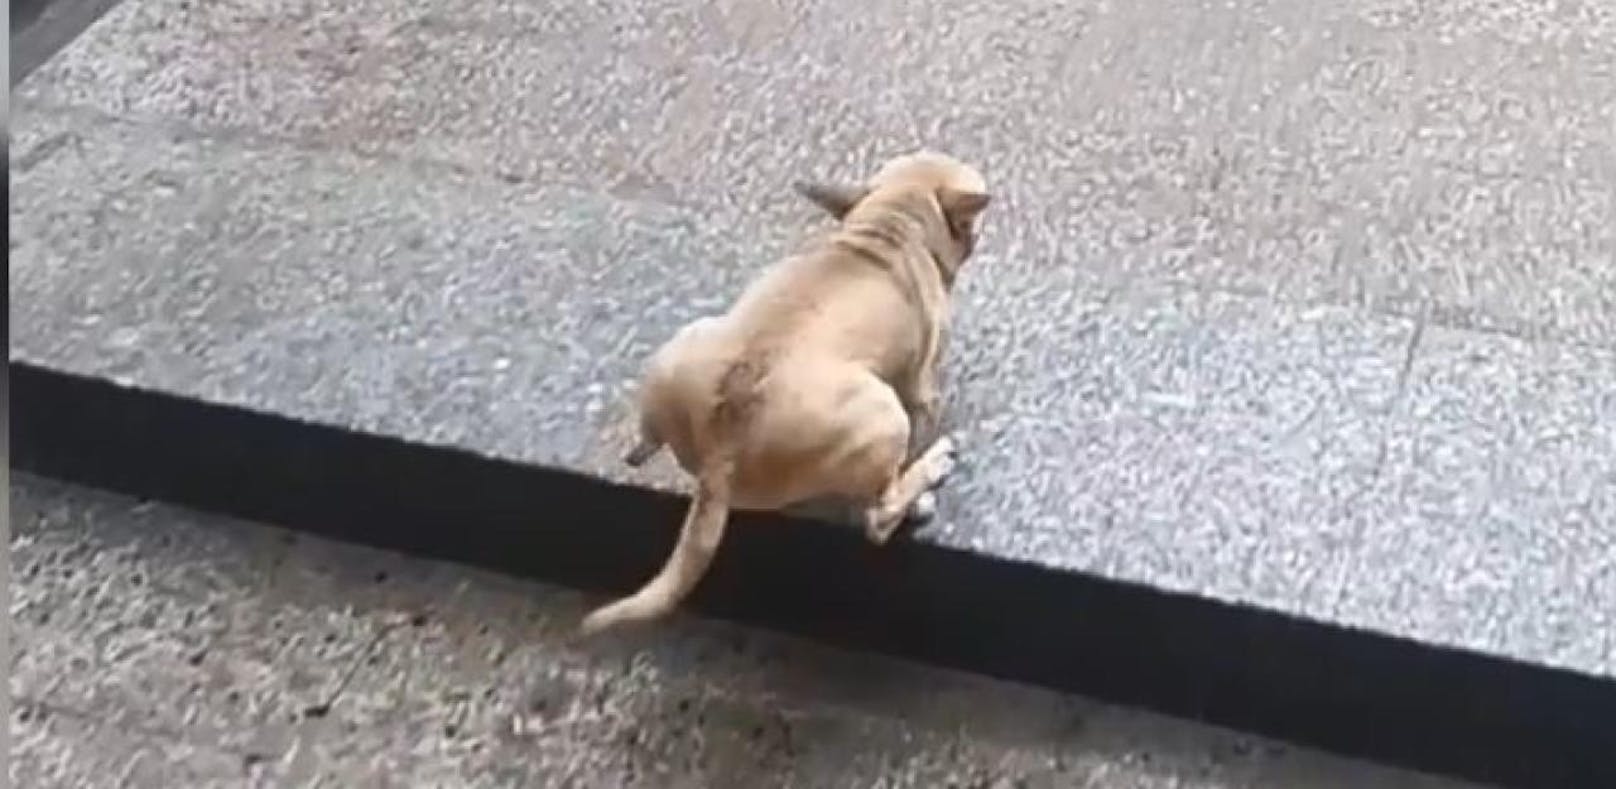 Chihuahua nimmt Stufen wie ein Big Boss